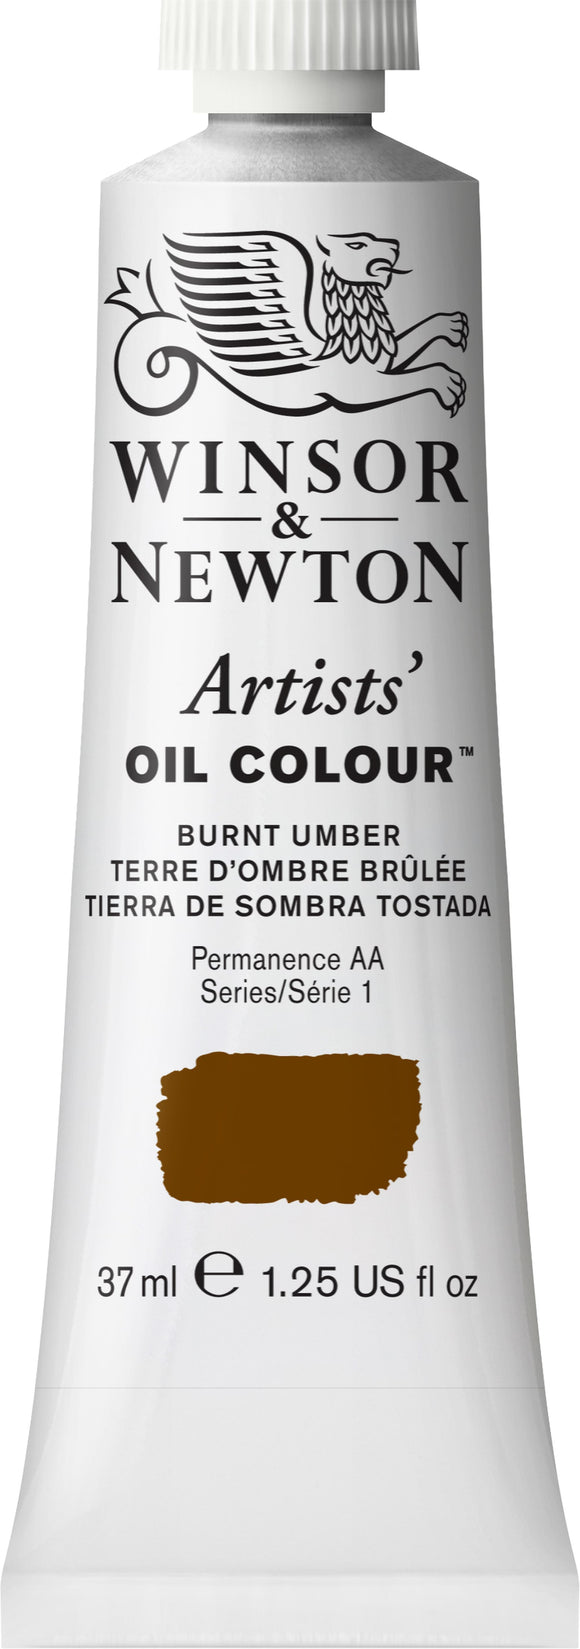 Winsor & Newton Artist Oil Colour Burnt Umber 37Ml